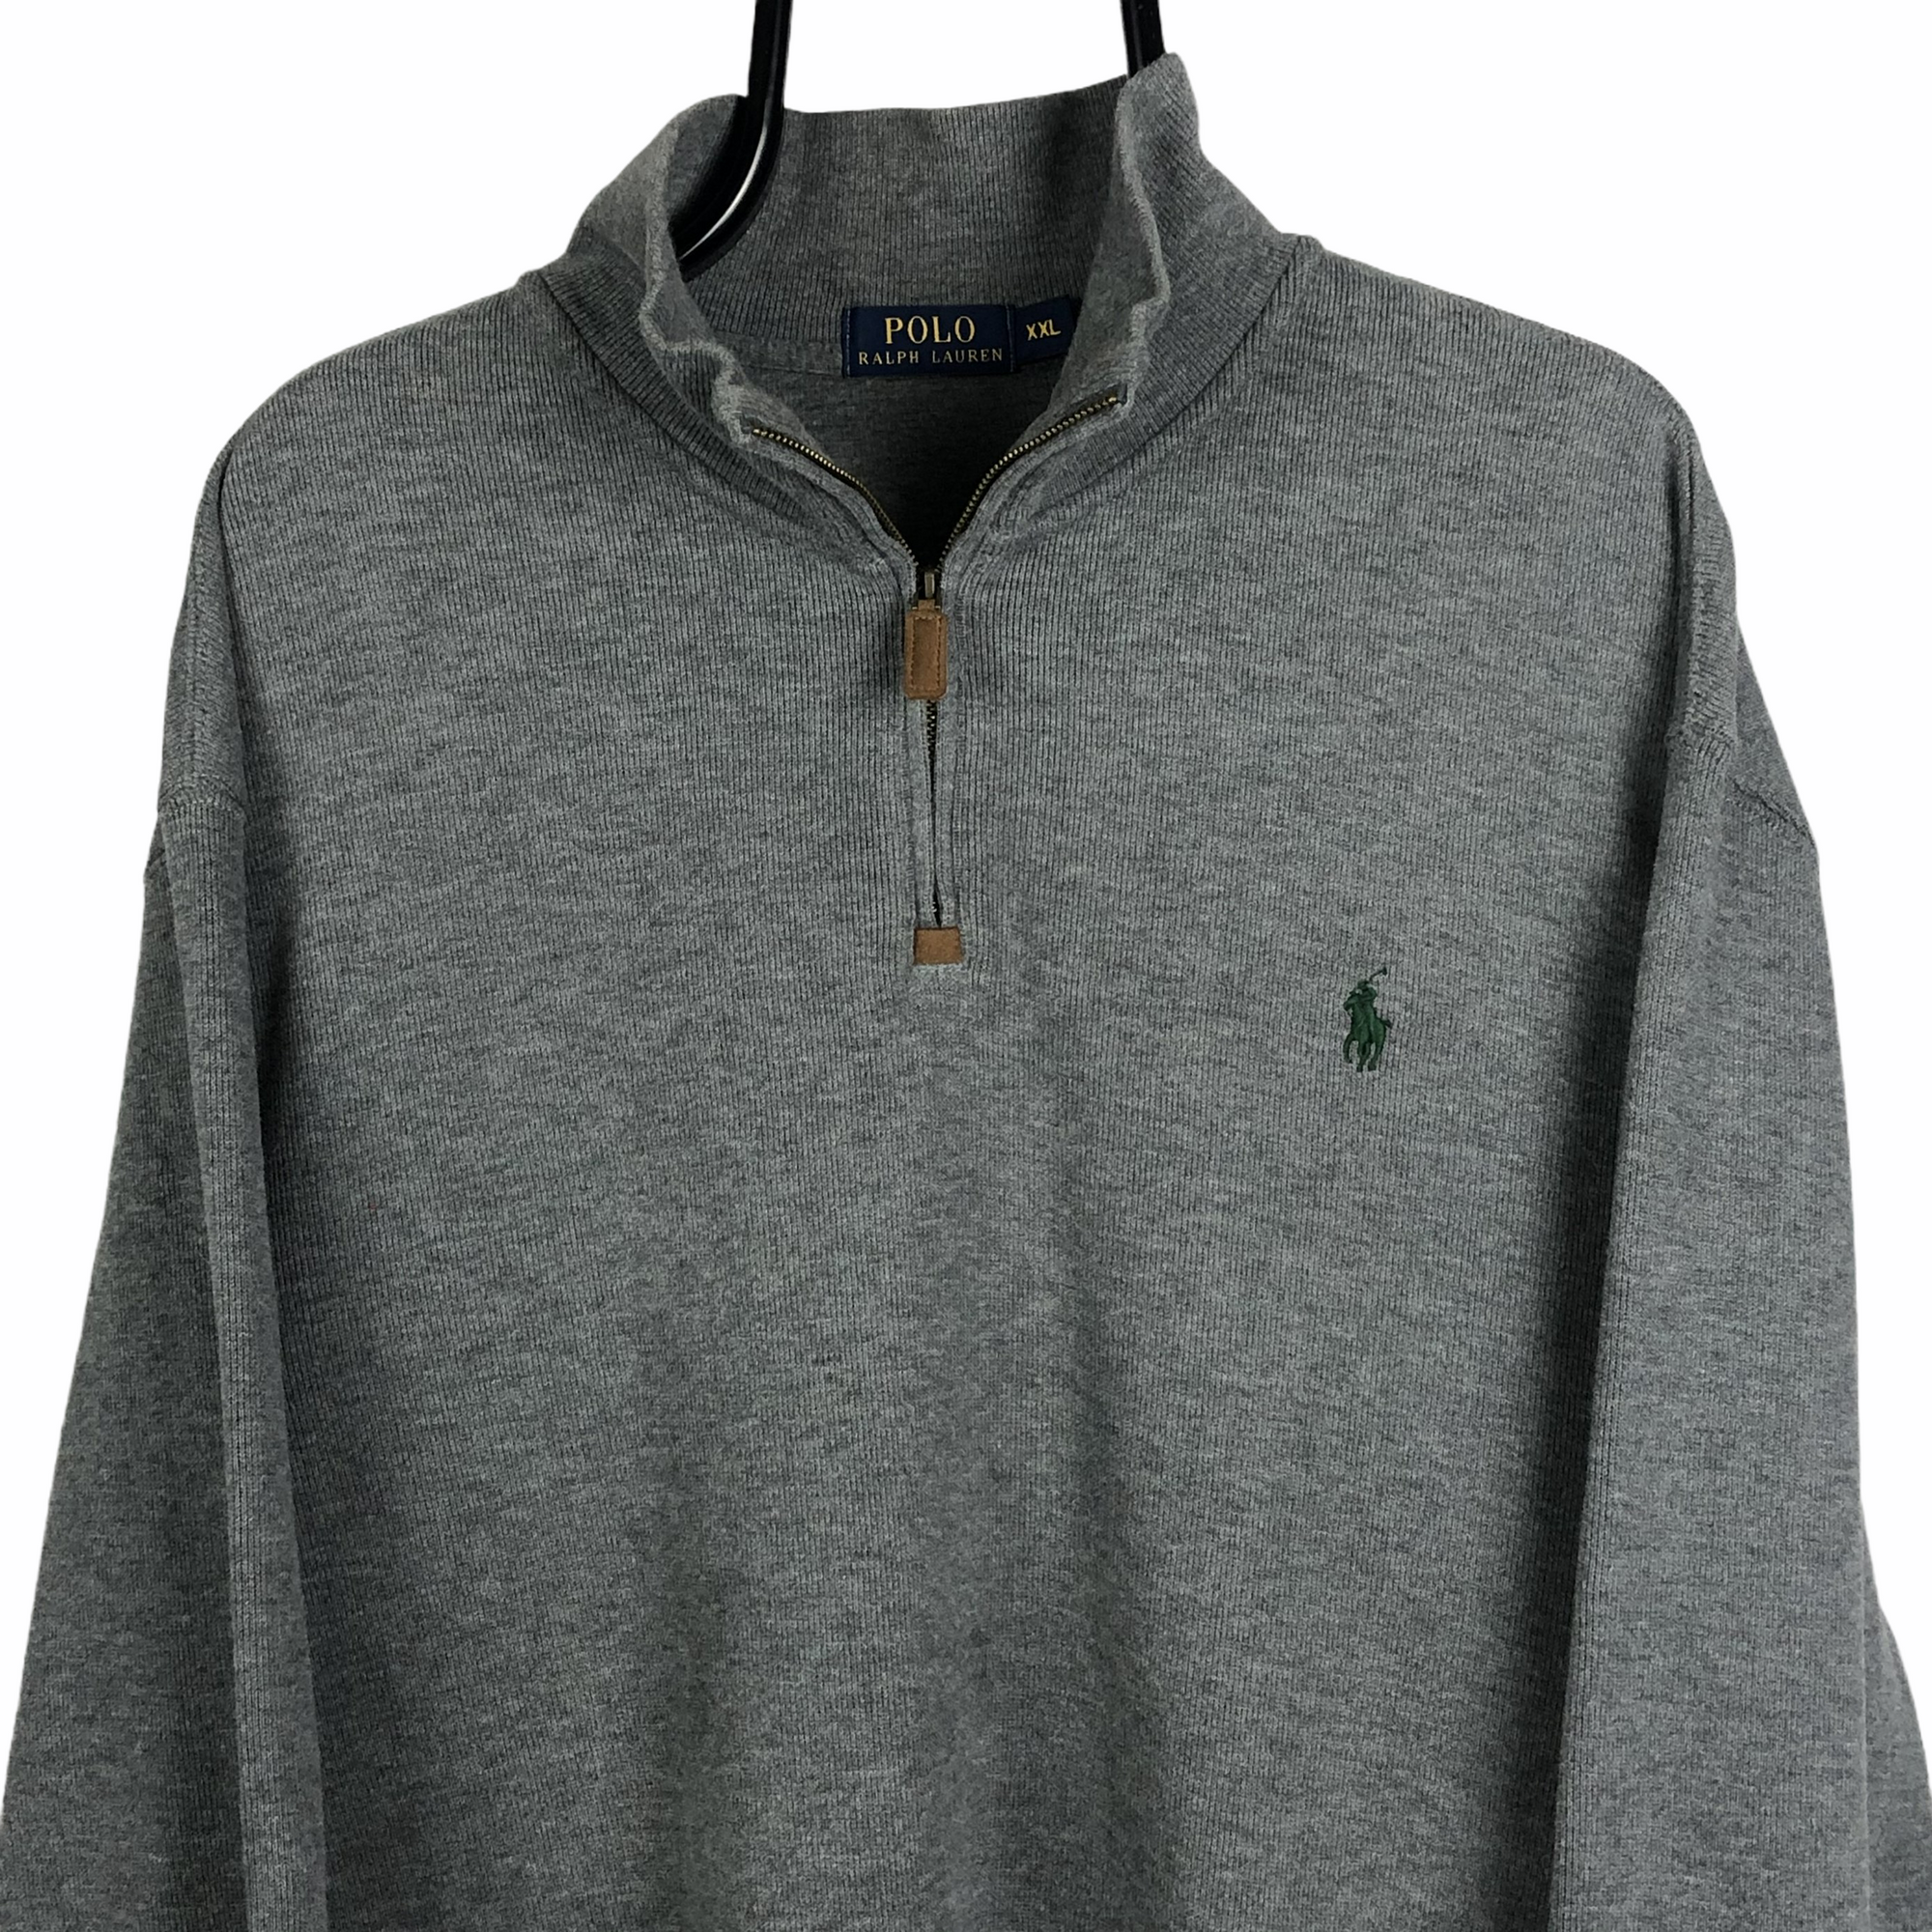 Polo 1/4 Zip Sweatshirt in Grey - Men's XXL/Women's XXXL